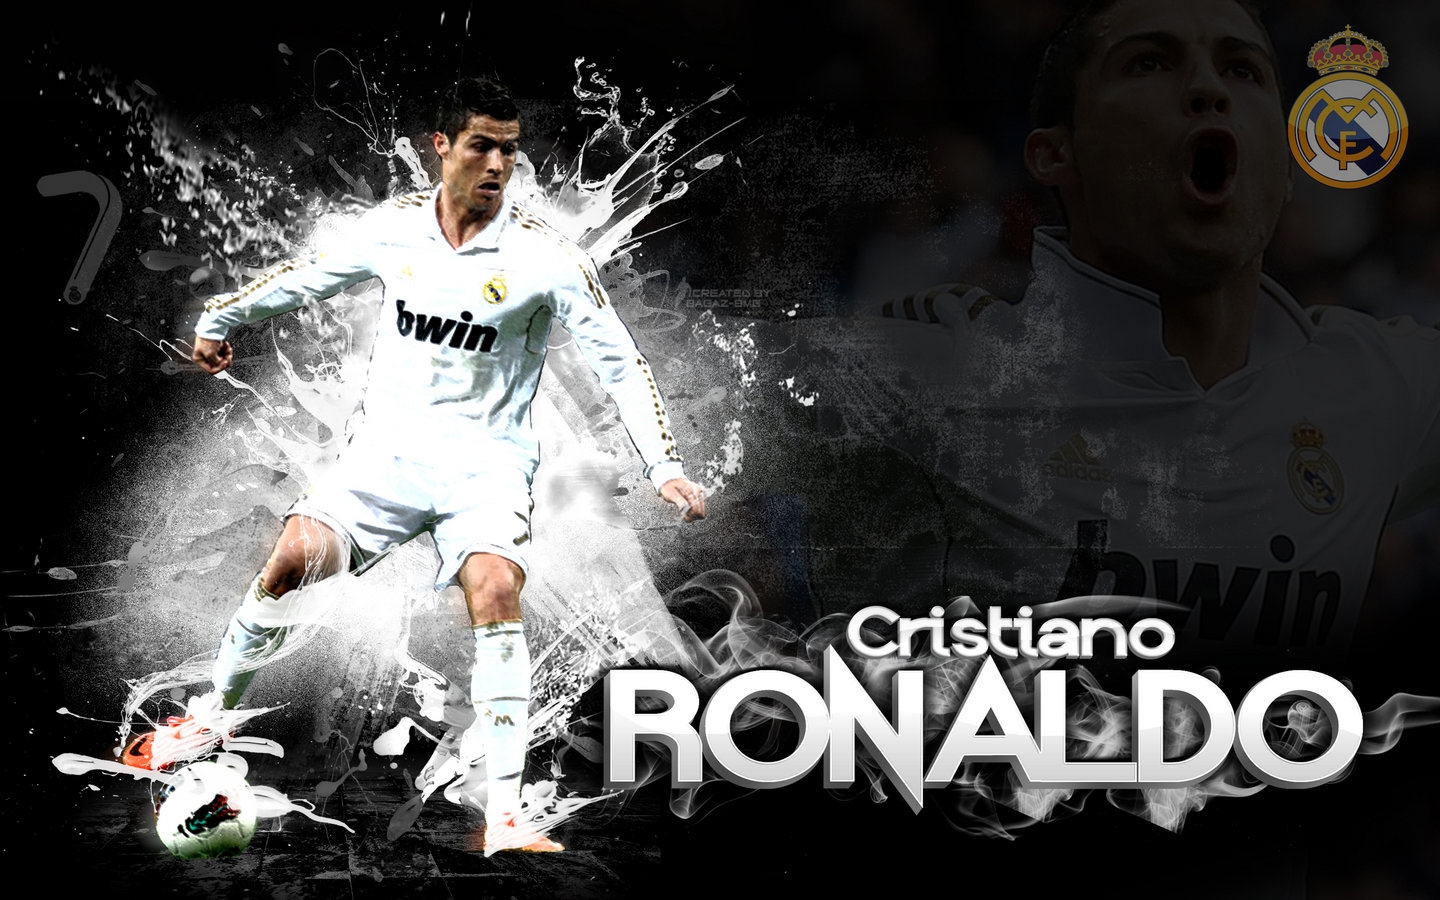 Cristiano Ronaldo Real Madrid New Hd Wallpapers 2013 - Cristiano Ronaldo Best Skills & Goal - HD Wallpaper 